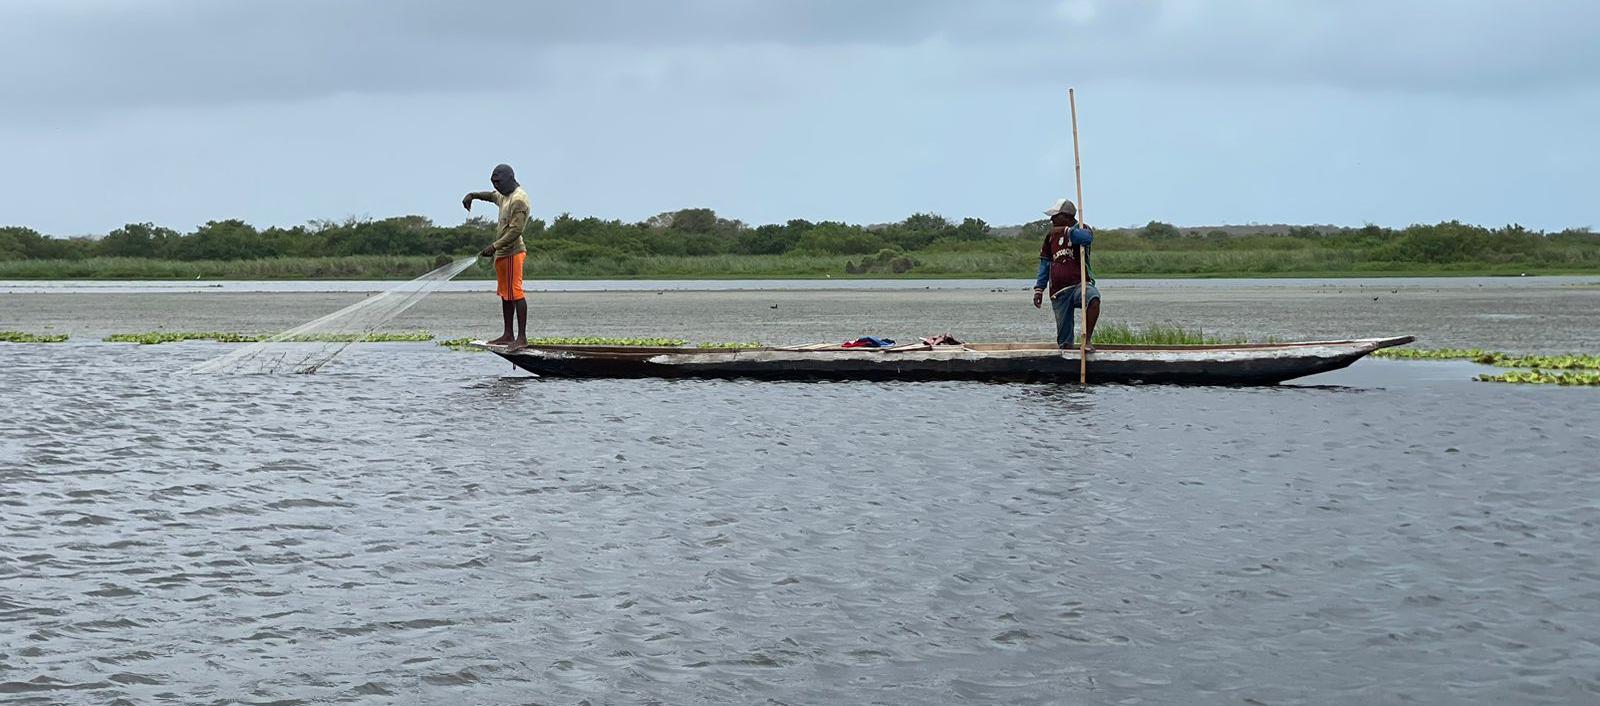 La presencia de plantas acuáticas plantas acuáticas que están afectan la navegación, la pesca y otras actividades náuticas en la Ciénaga del Totumo